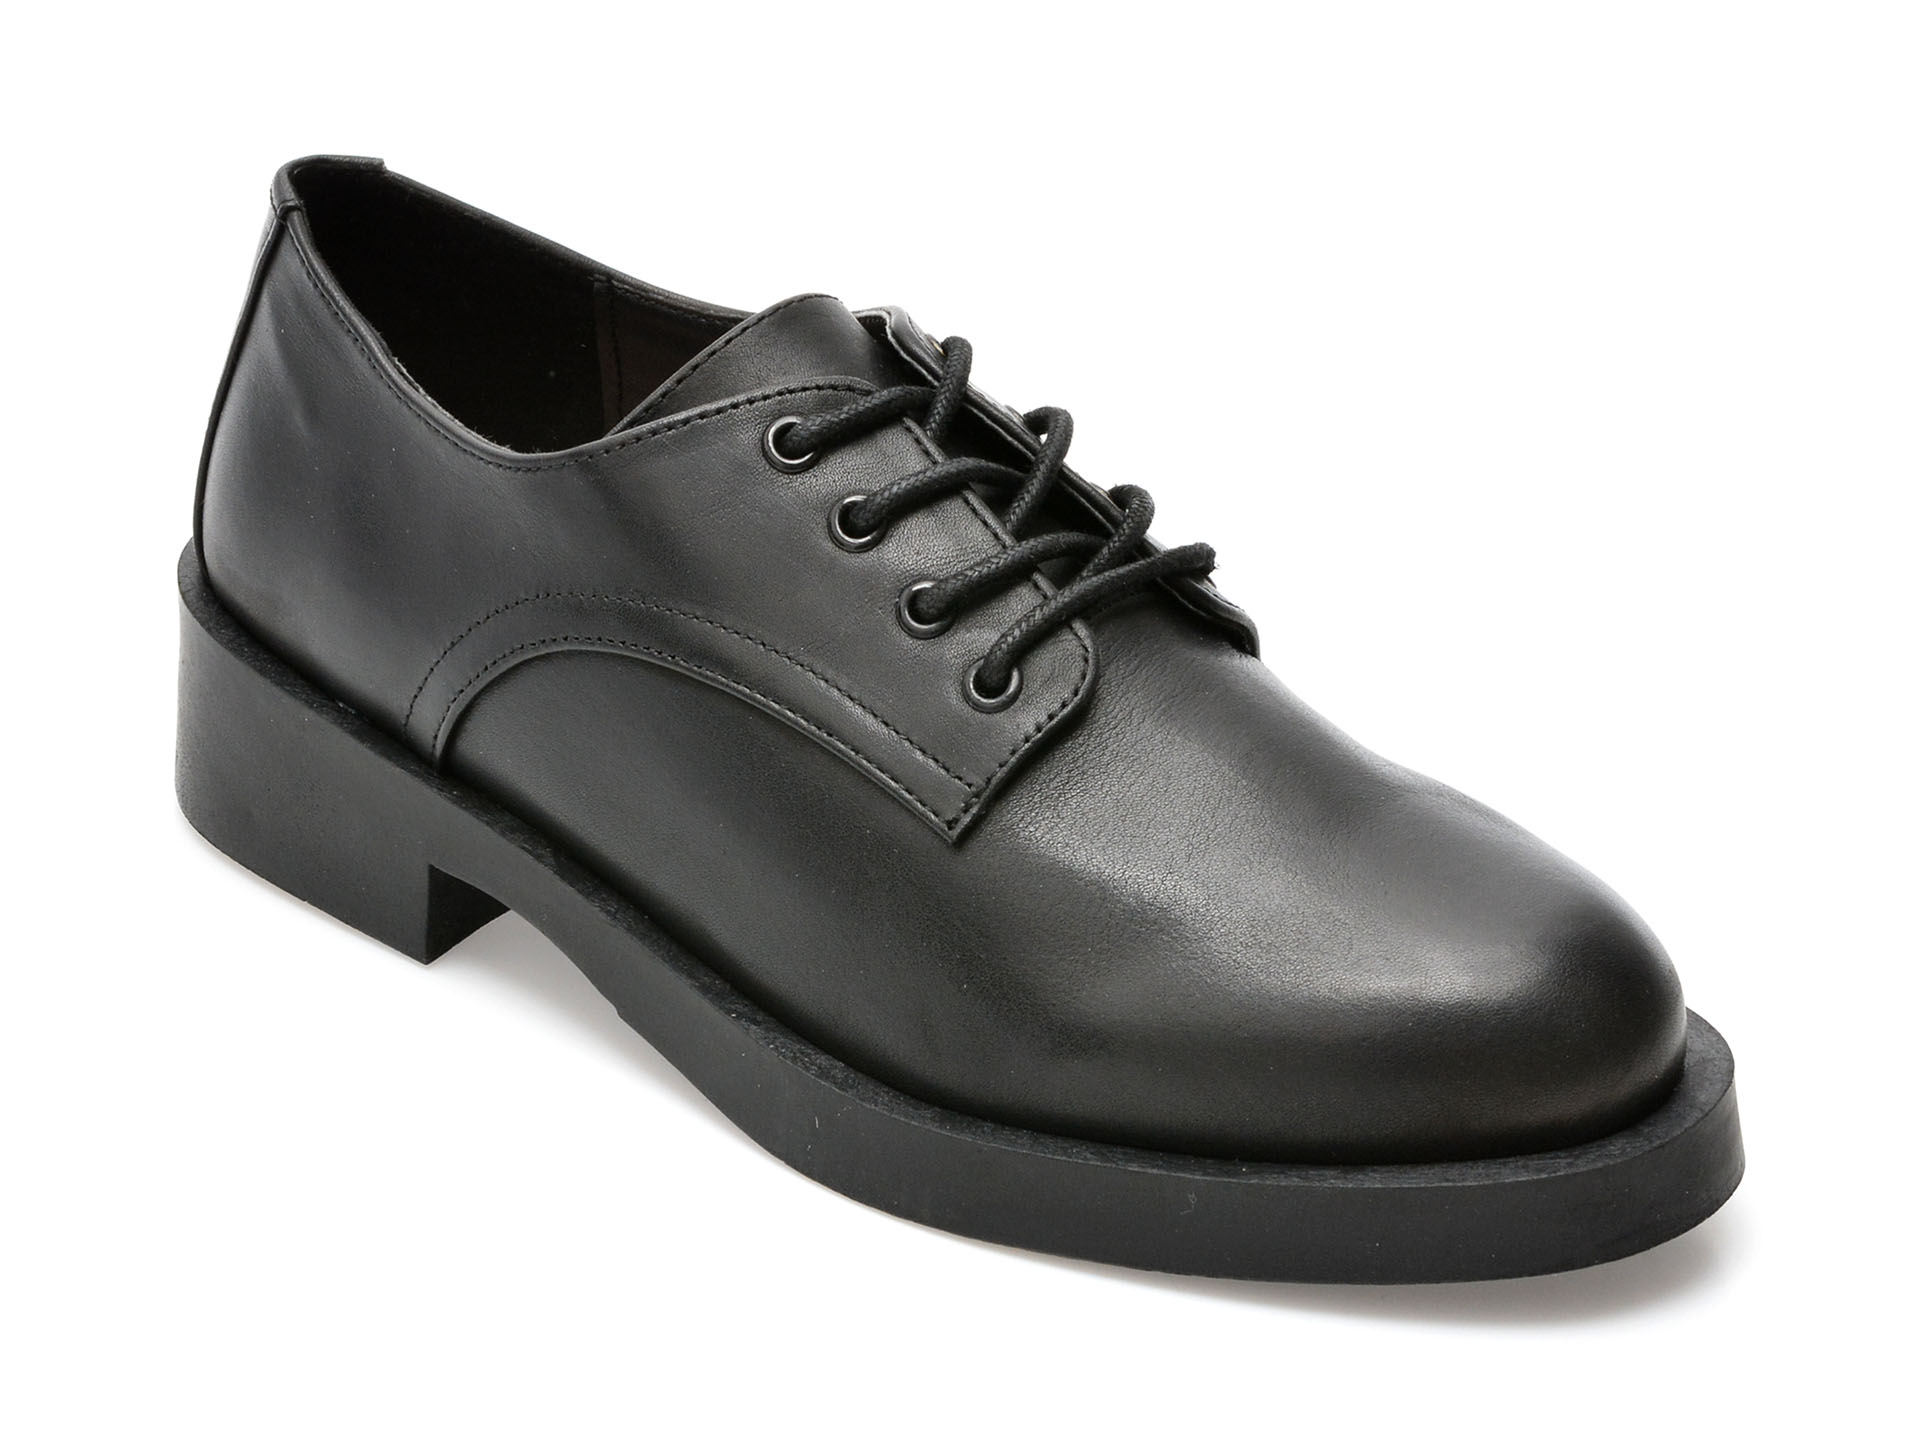 Pantofi ALDO negri, CAMBRIDGE001, din piele naturala /barbati/pantofi